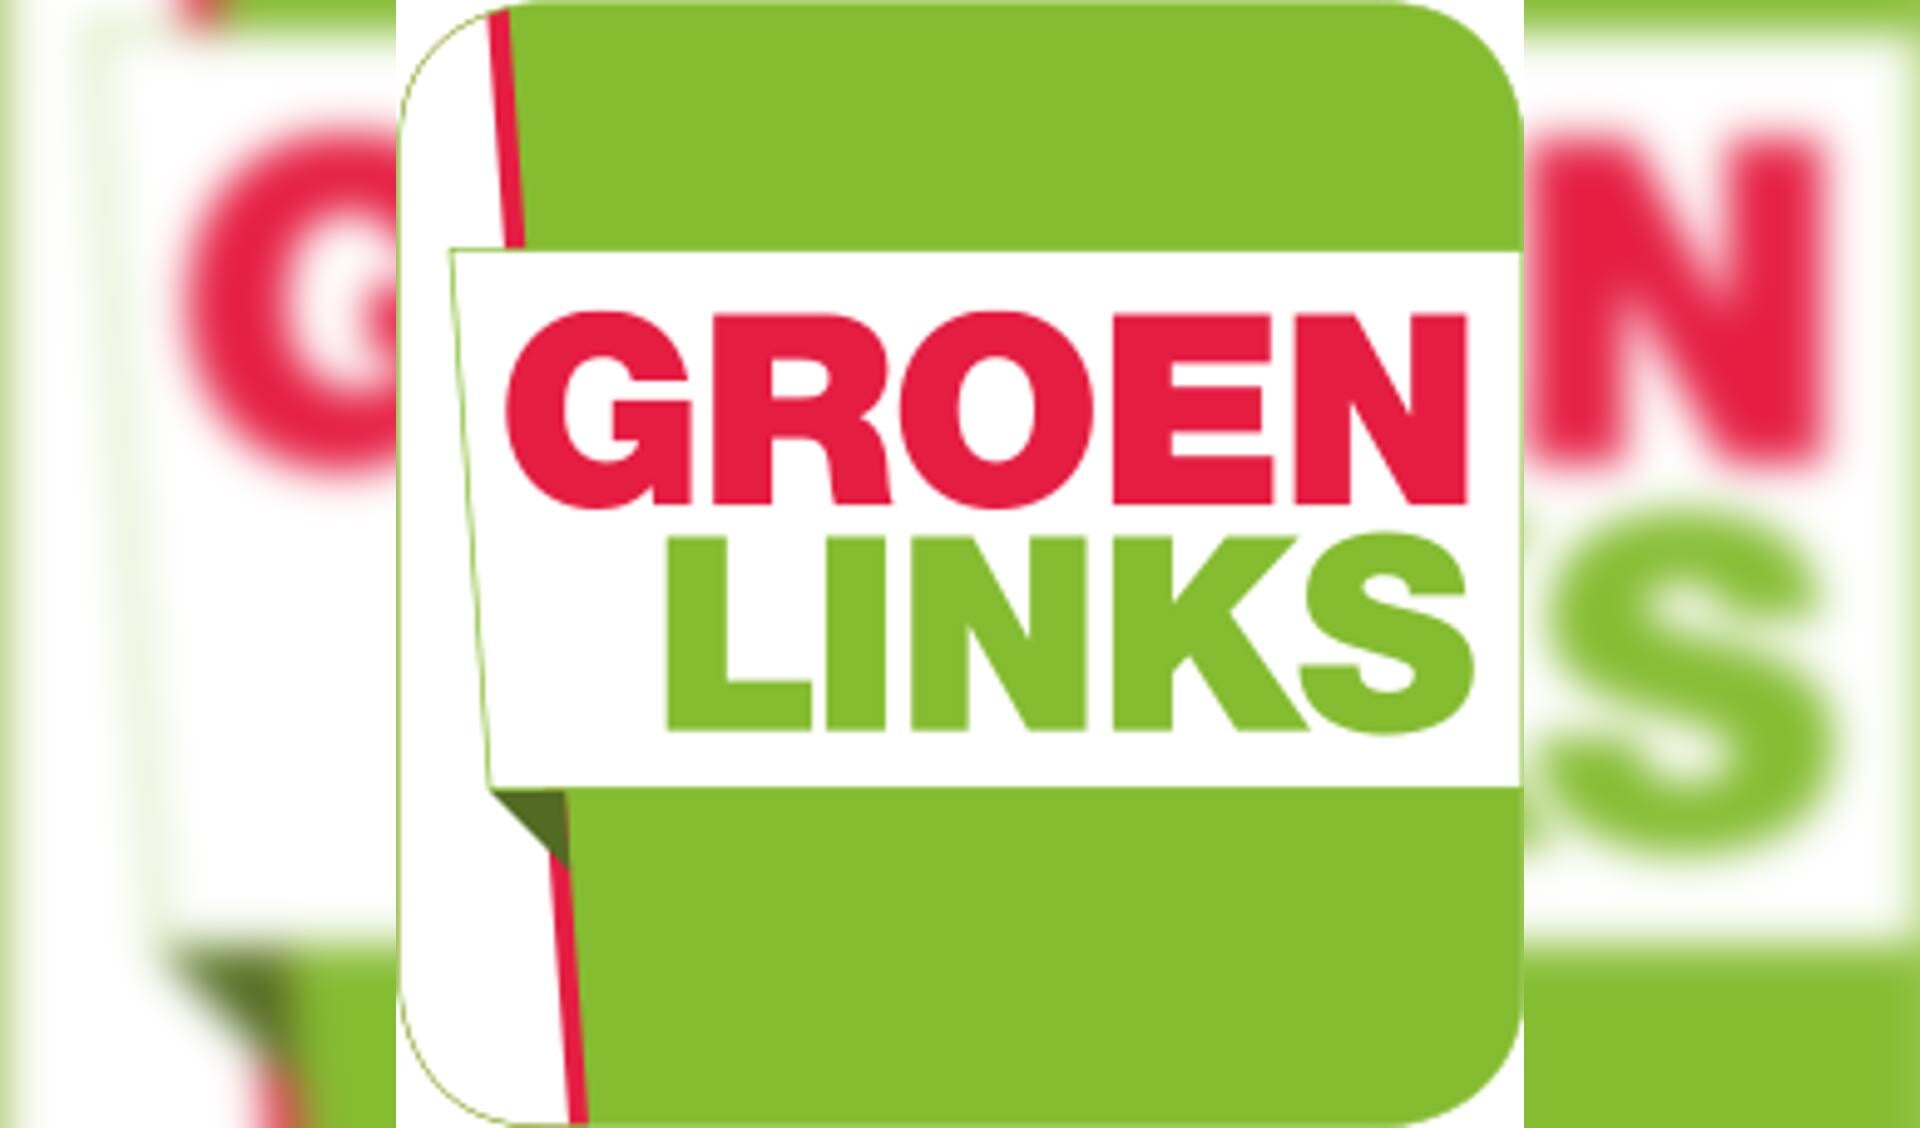 De fractie van GroenLinks is van mening dat er in de gemeente Oss meer aandacht moet komen voor seksueel grensoverschrijdend gedrag.